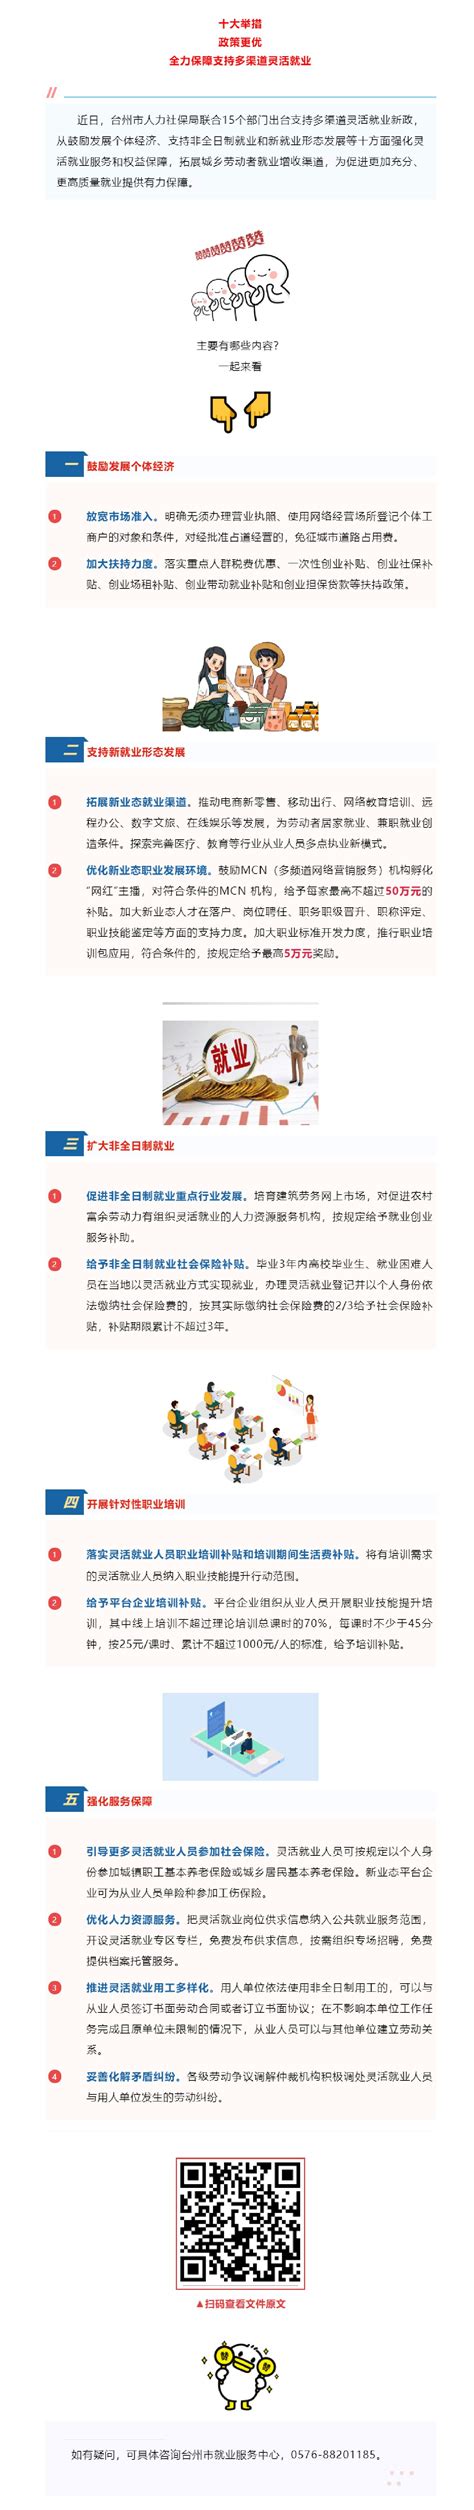 《台州市业主大会与业主委员会指导规则》政策图文解读 - 蜂巢物业论坛